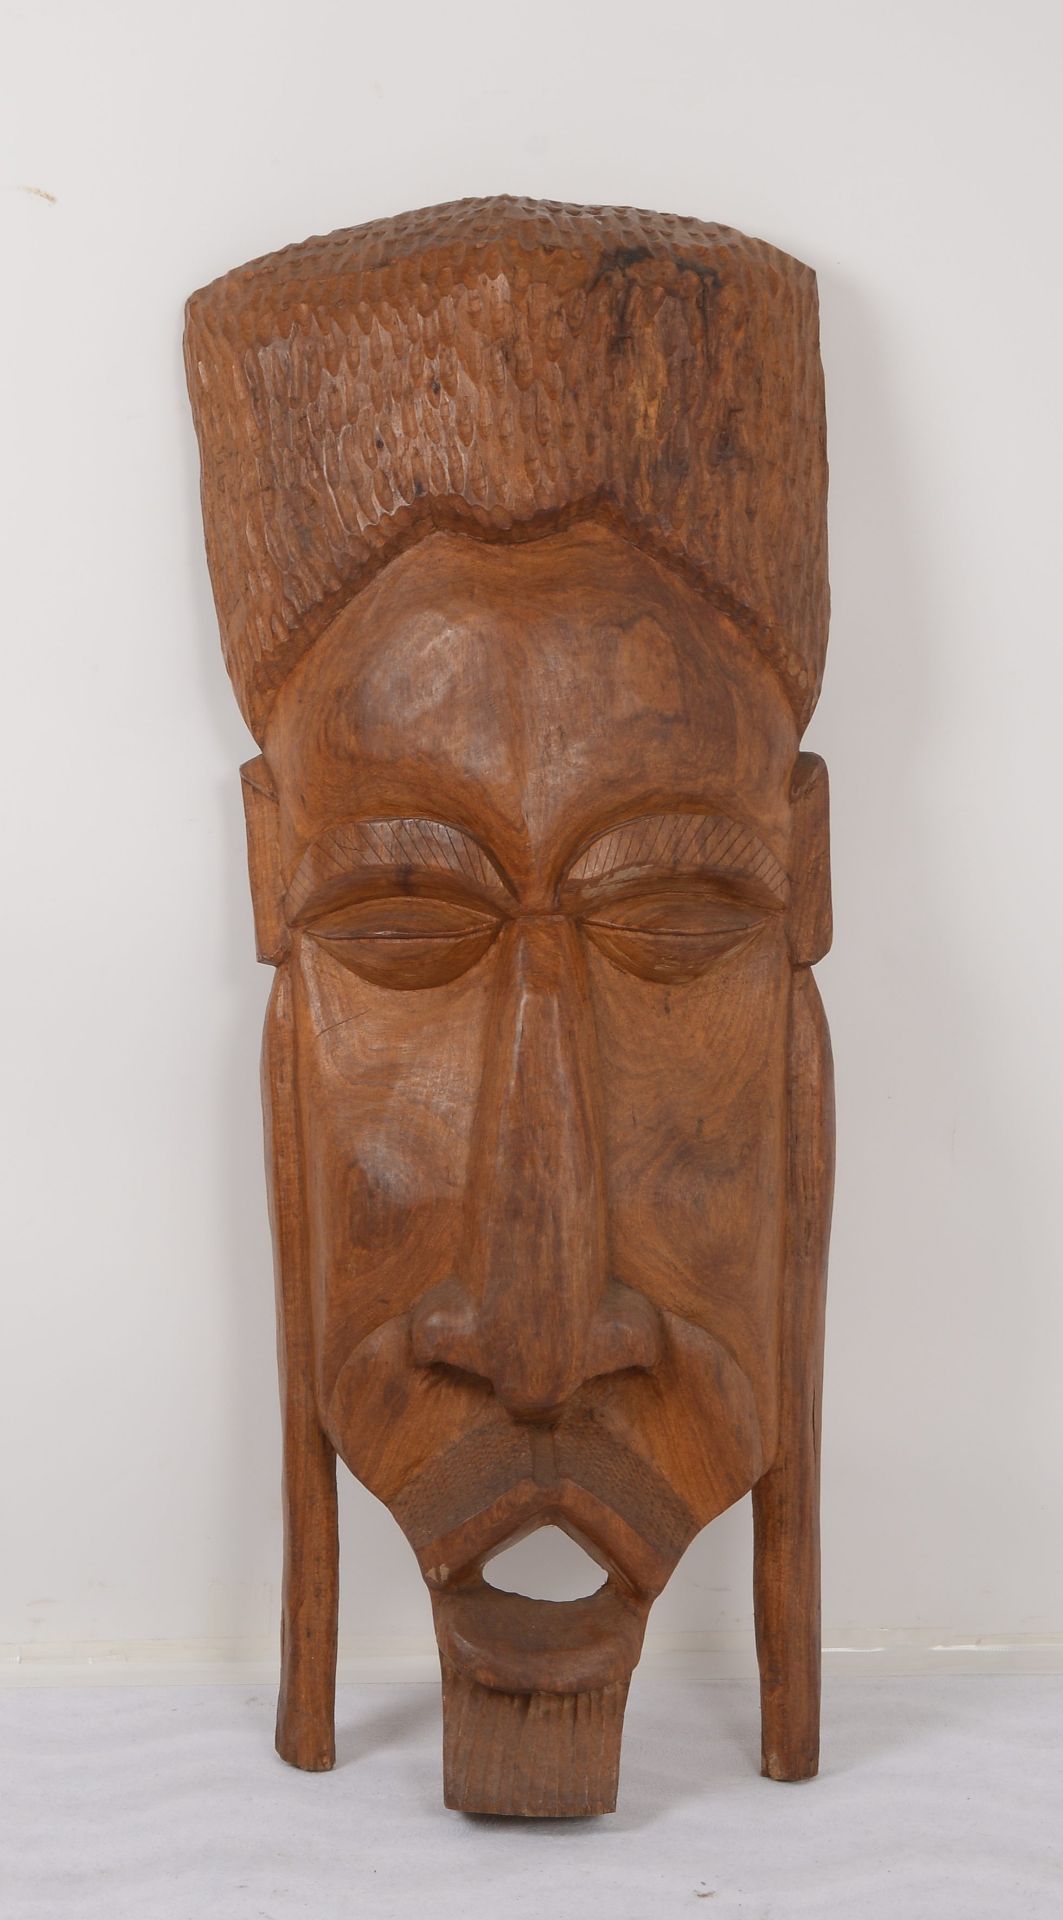 Grosse Maske (Afrika), Hartholz handgeschnitzt, Masse 117 x 50 cm